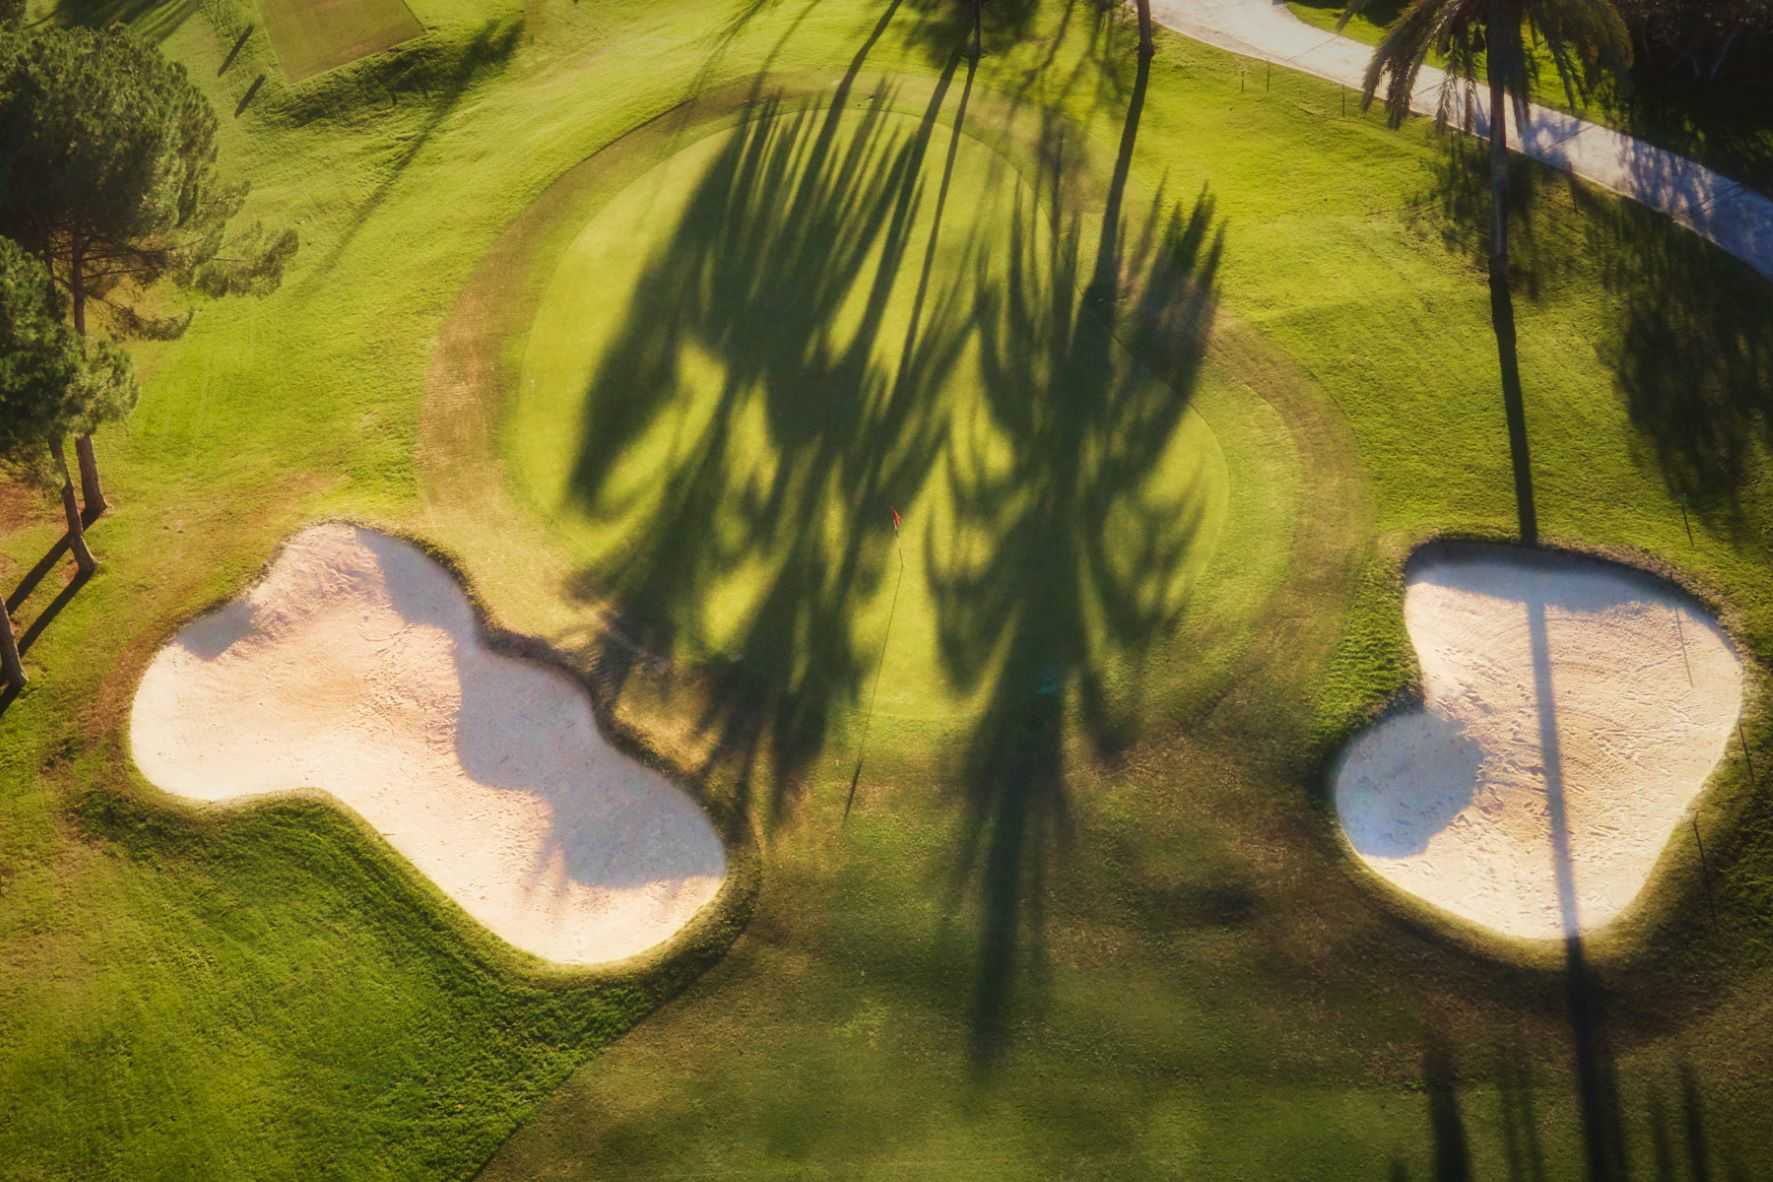 El Paraíso Golf Club